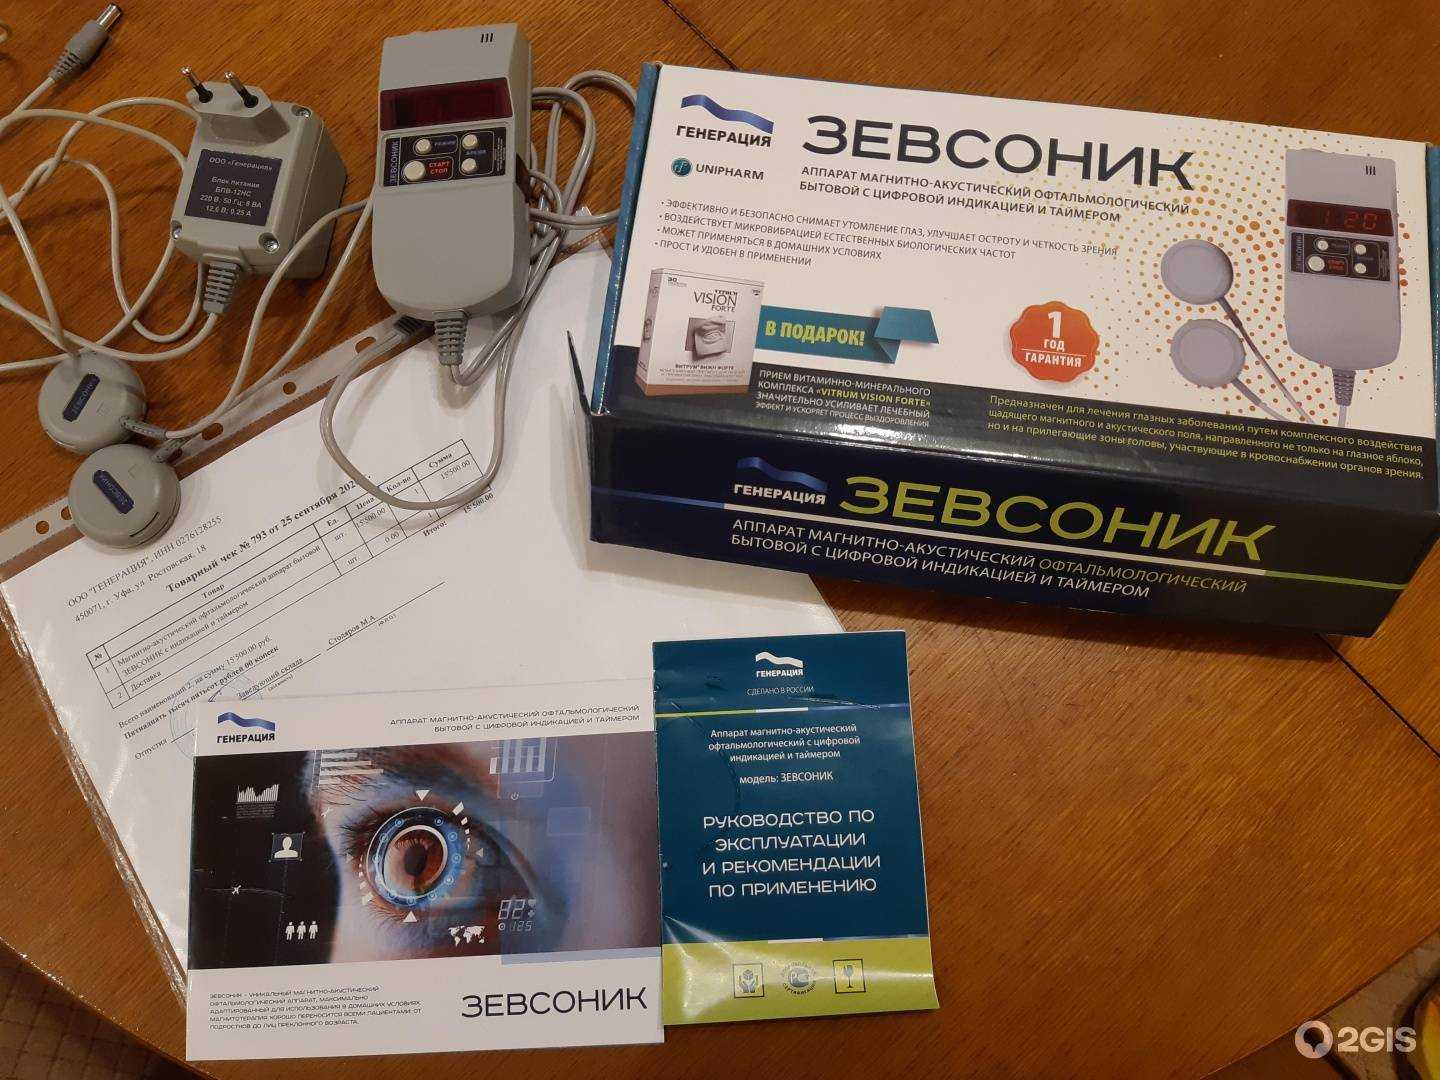 Зевсоник – аппарат для домашней профилактики зрения « бнк